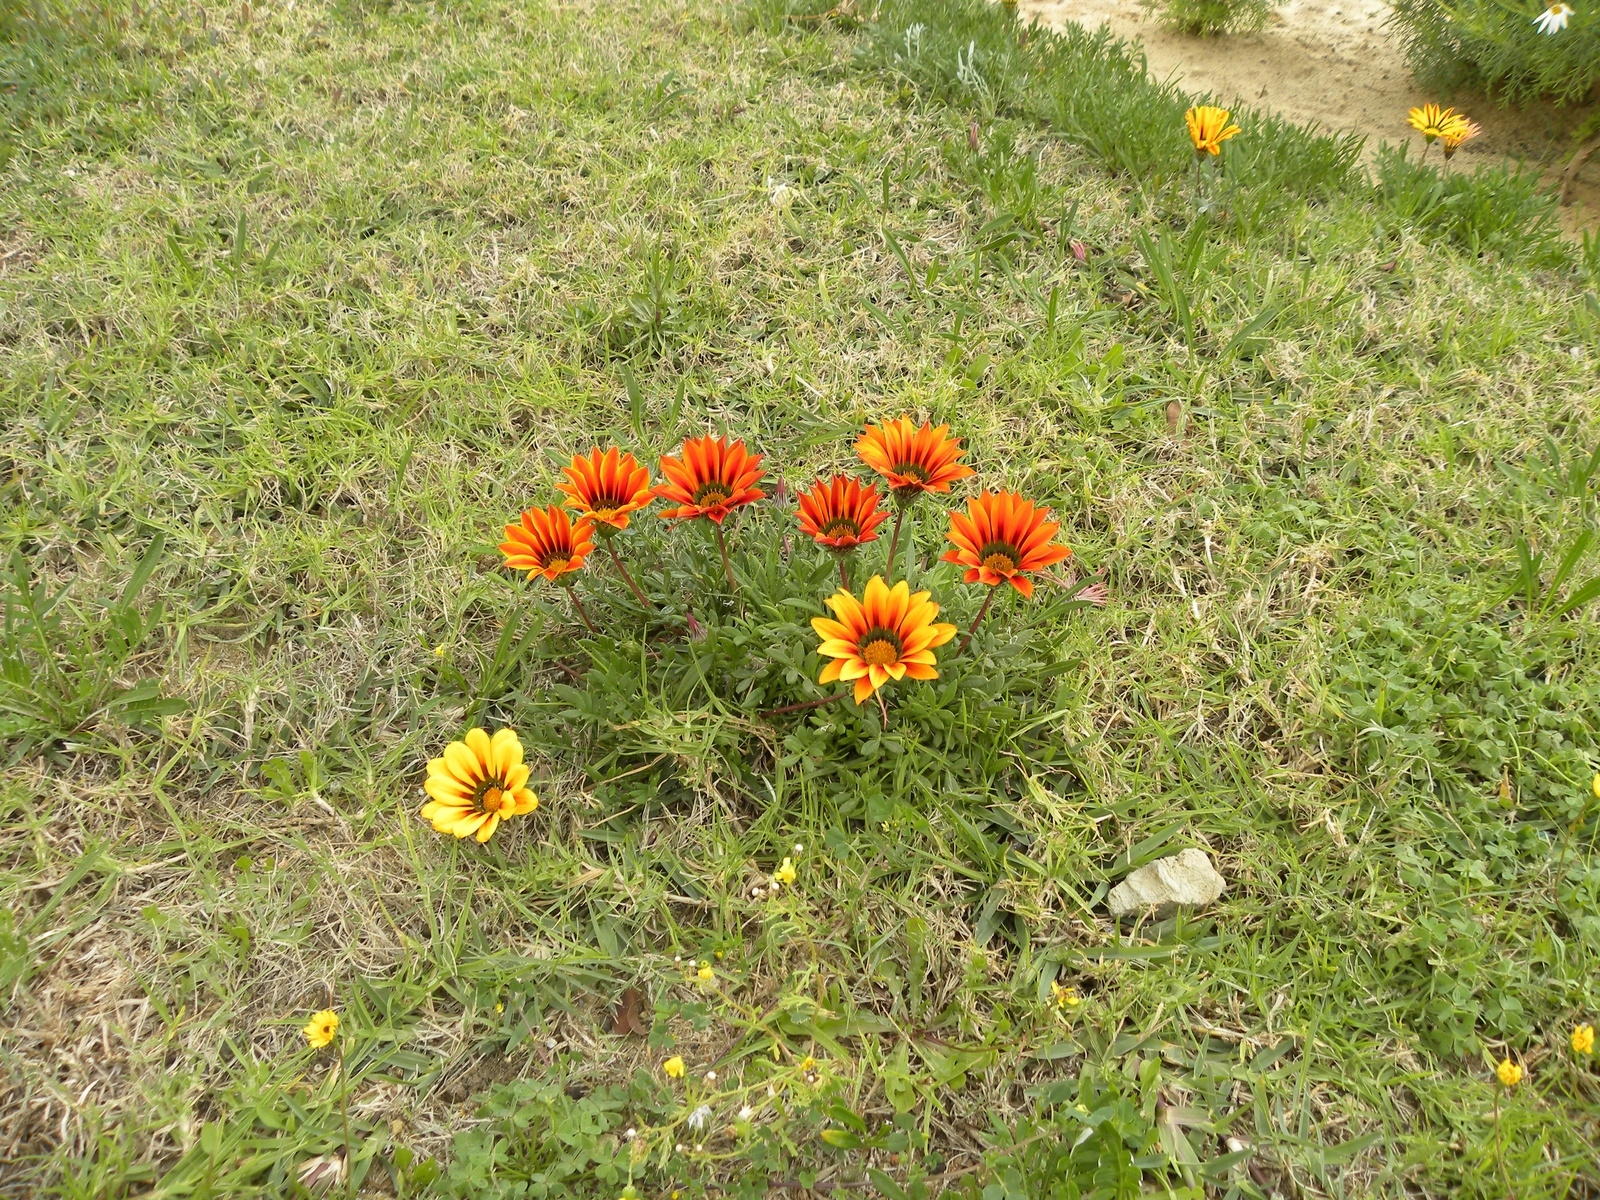 virágok